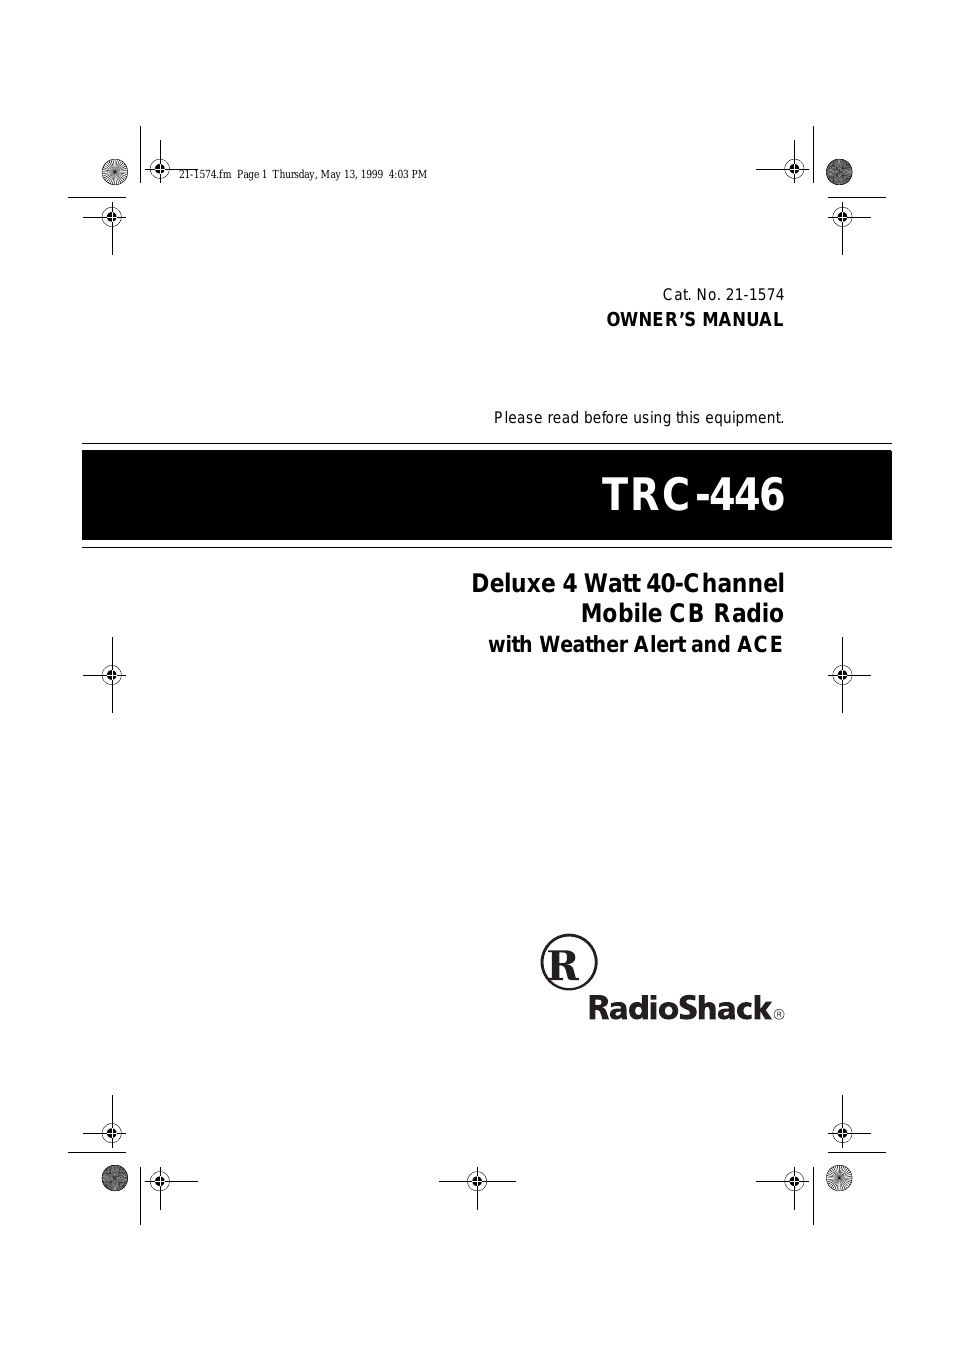 TRC-446